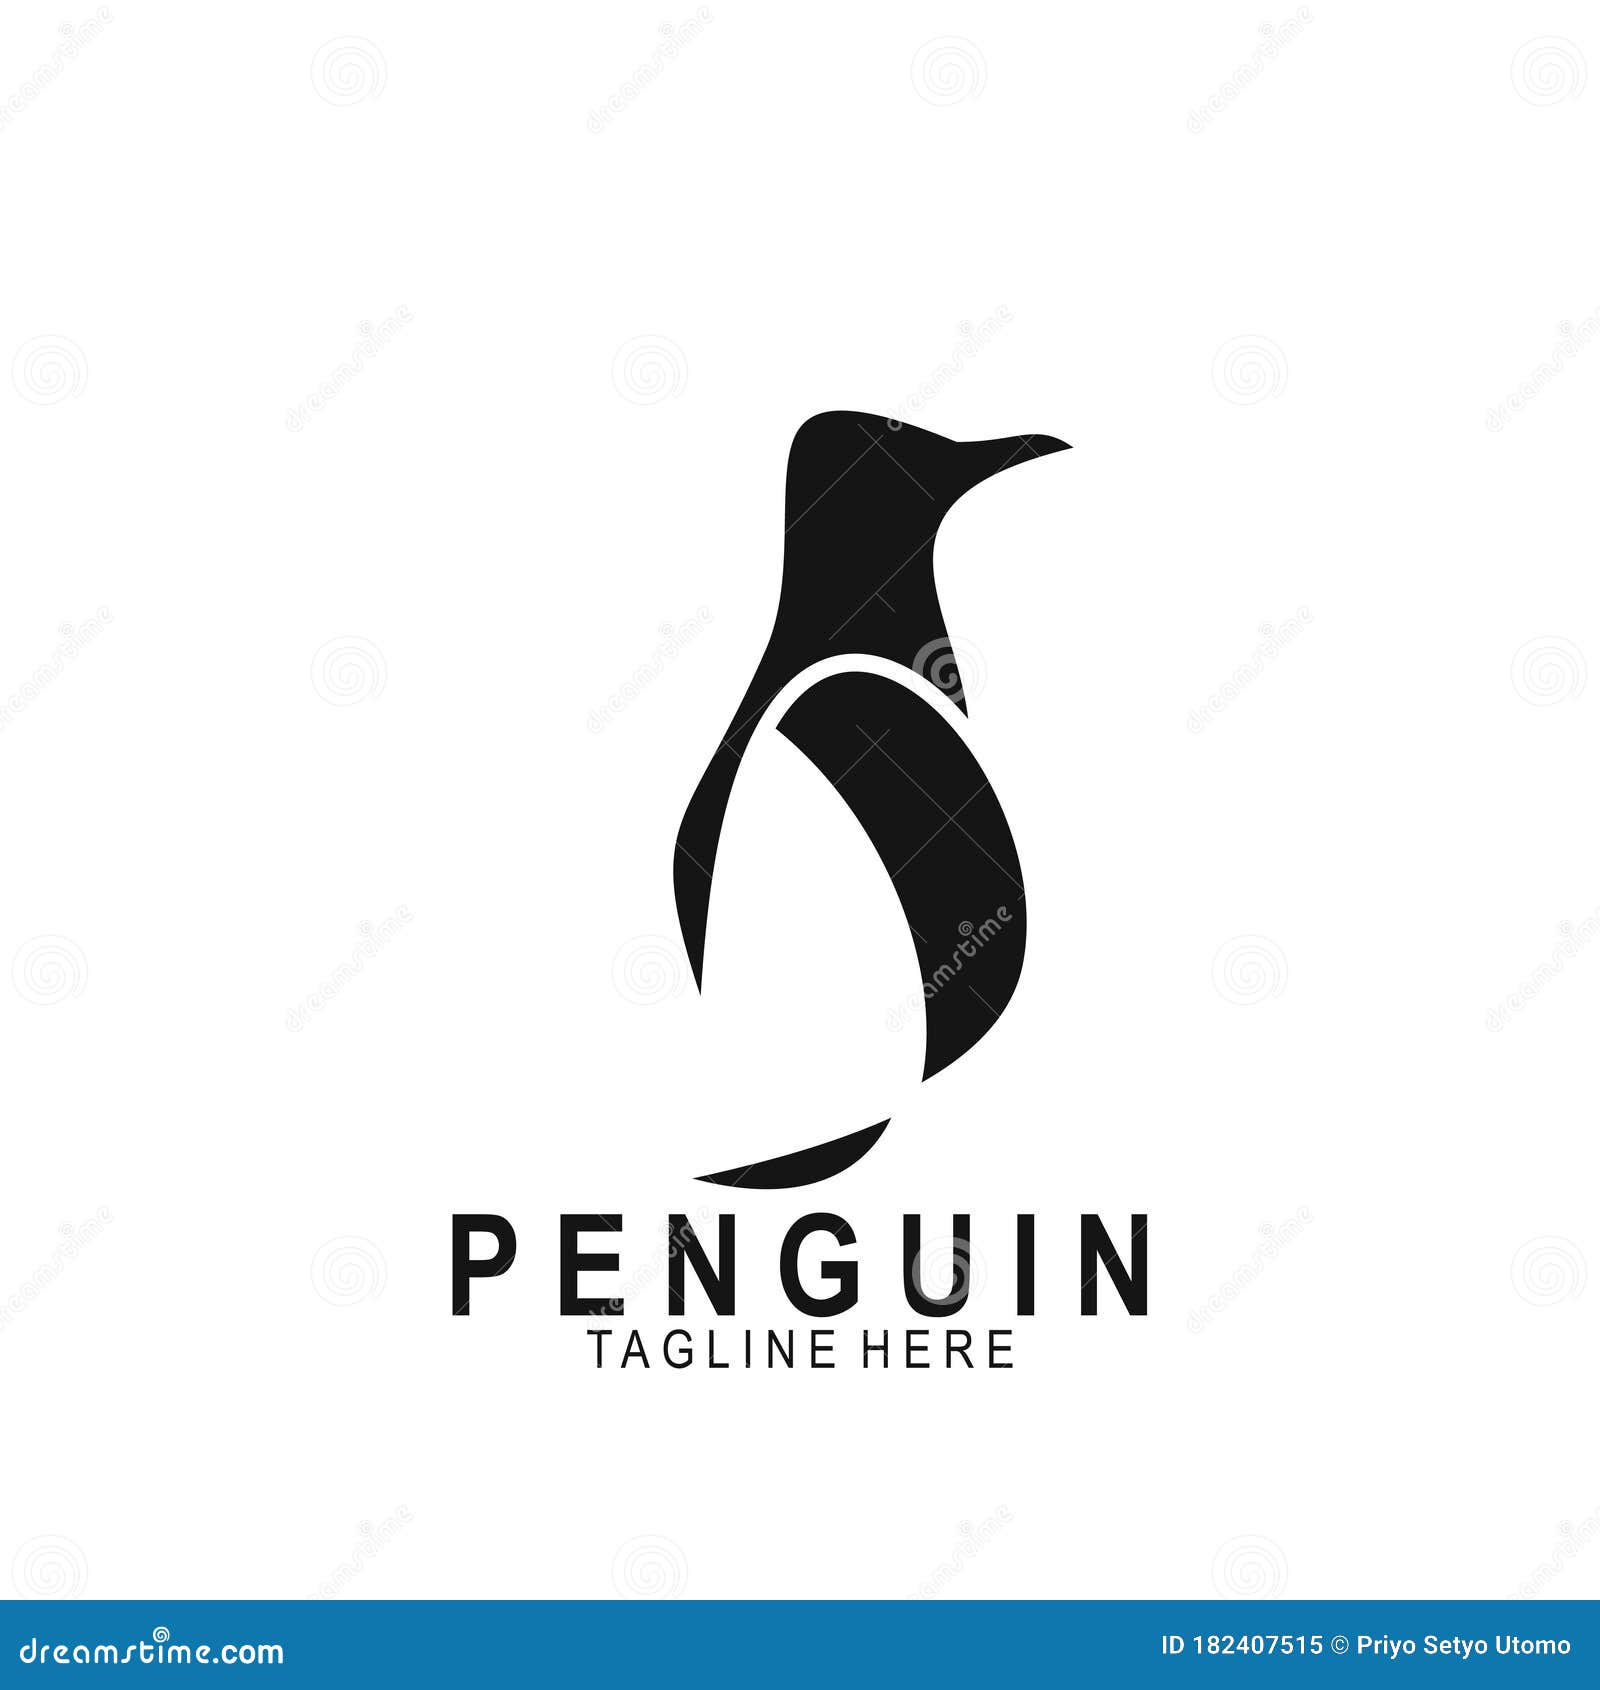 Penguin Animal Logo with Modern Design Stock Illustration ...